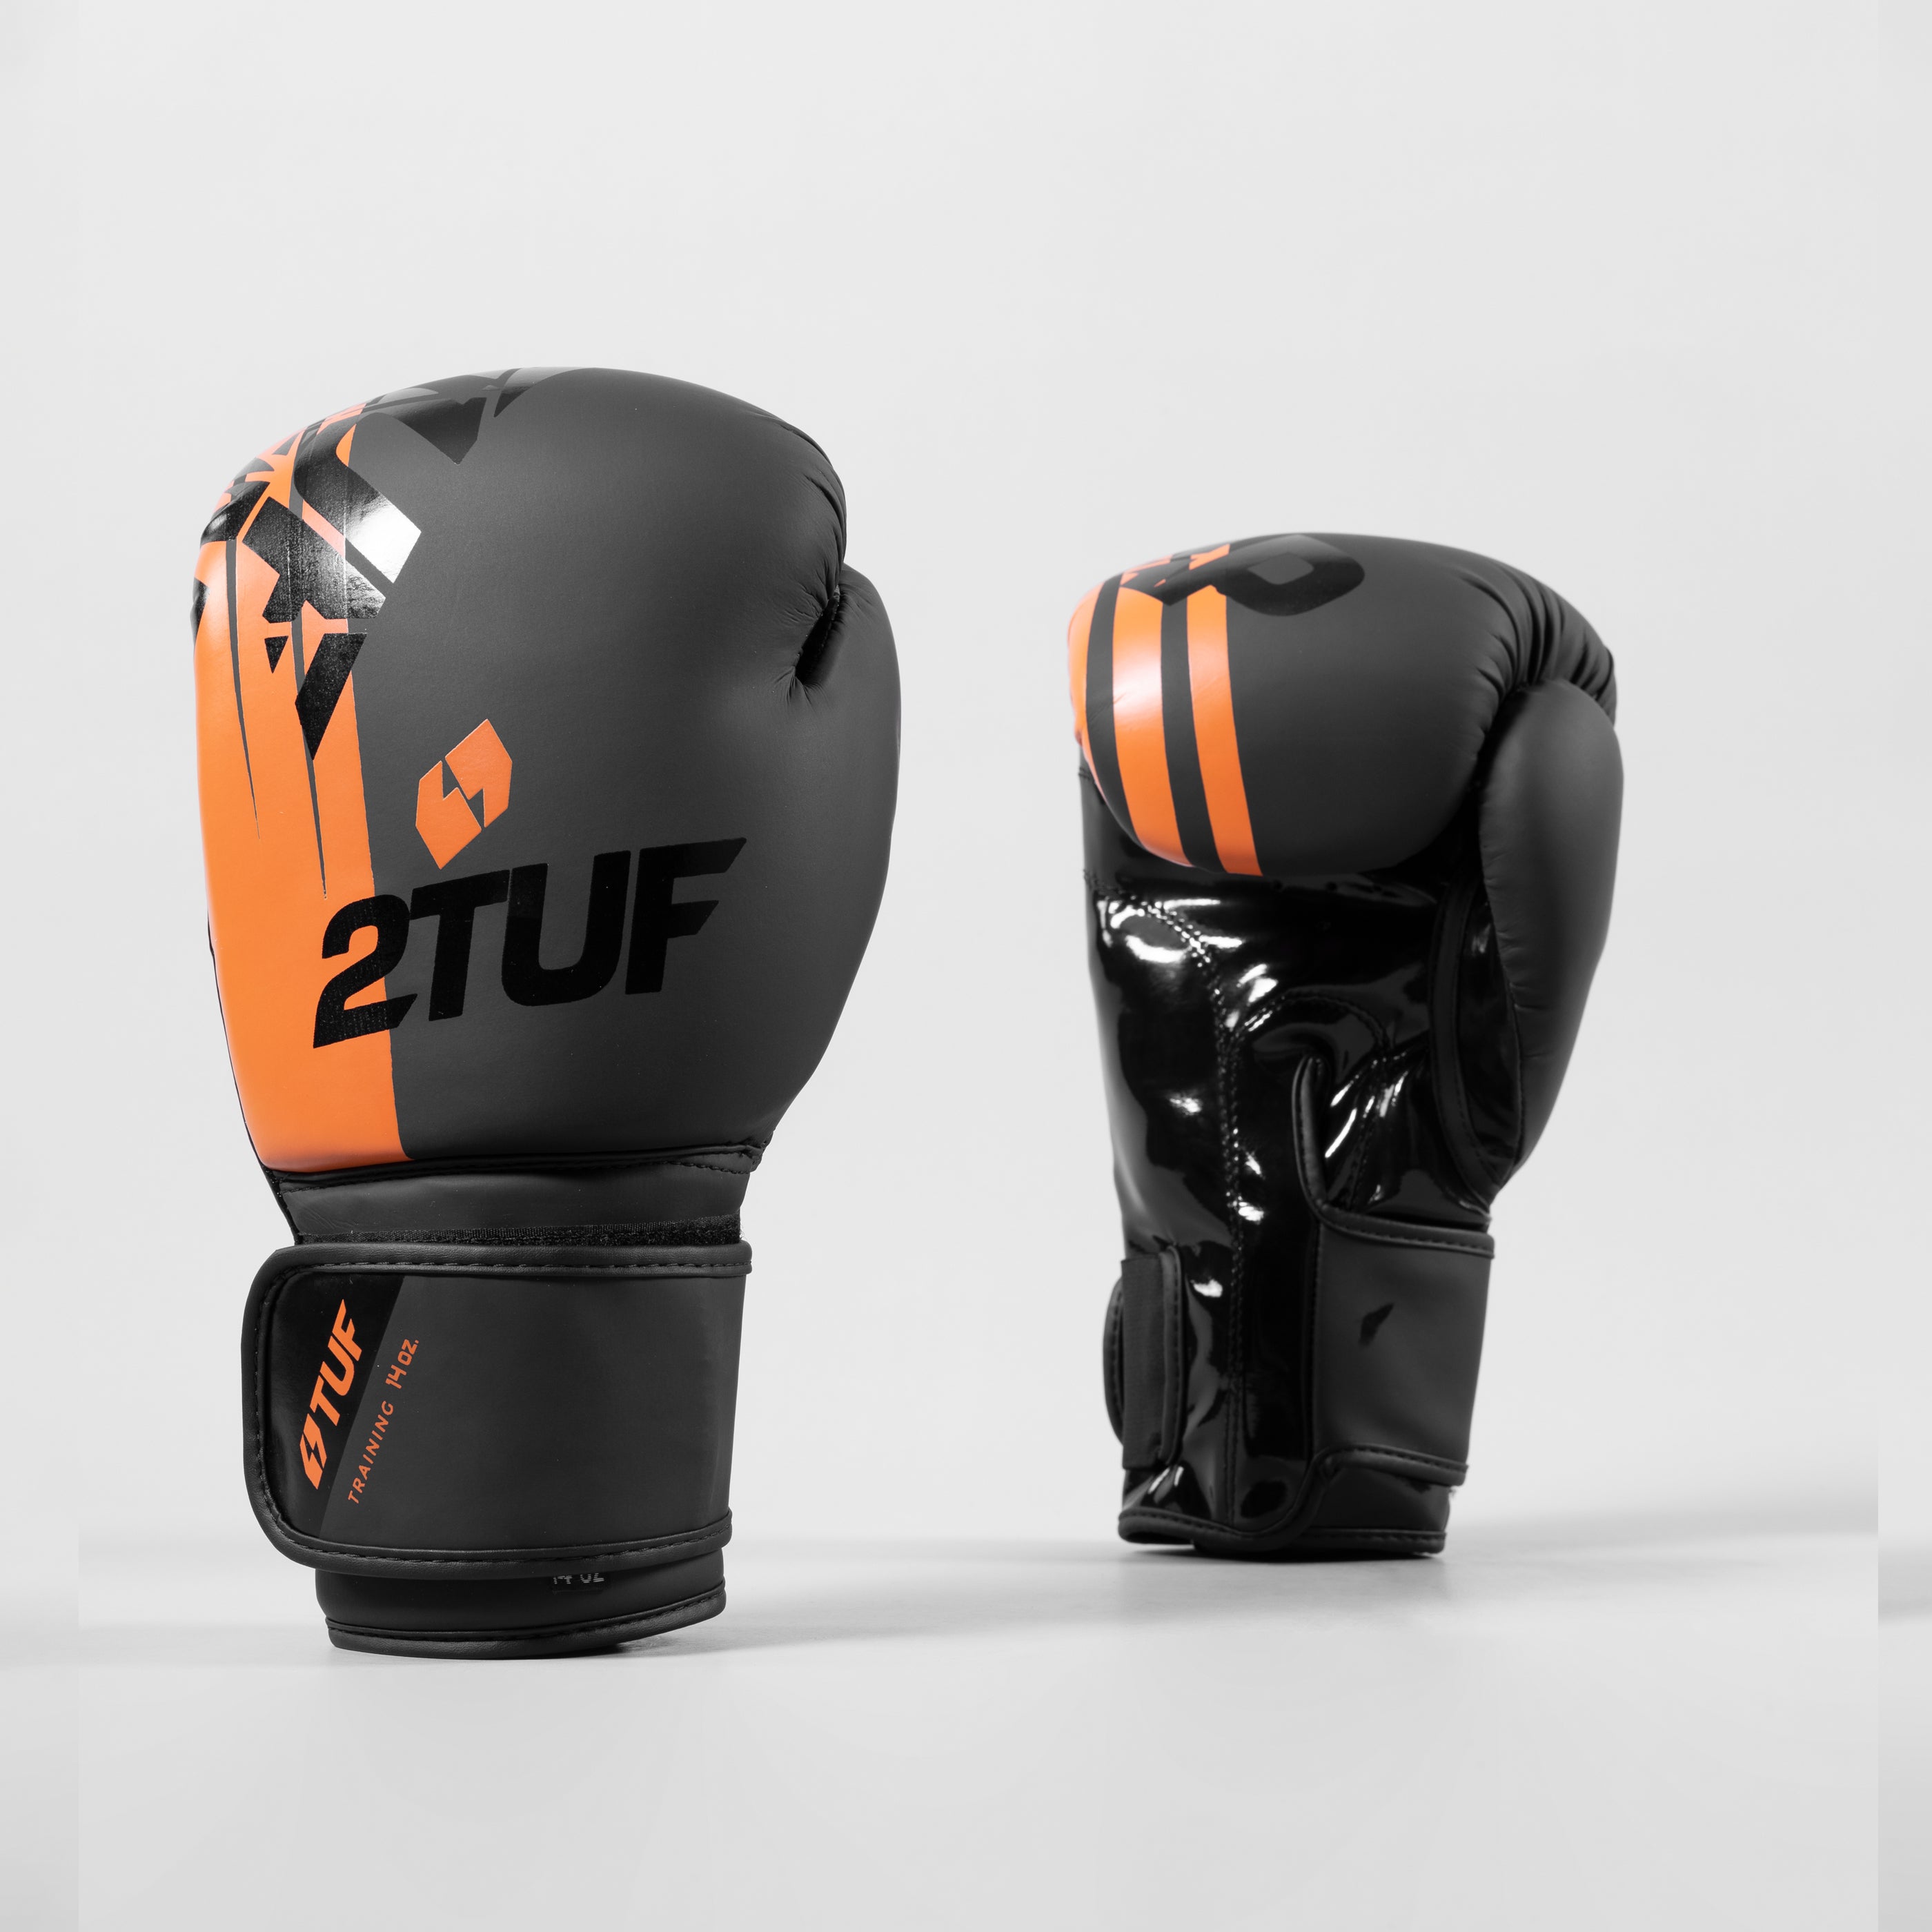 'Tuff' Boxing Gloves - Black/Orange 2TUF2TAP